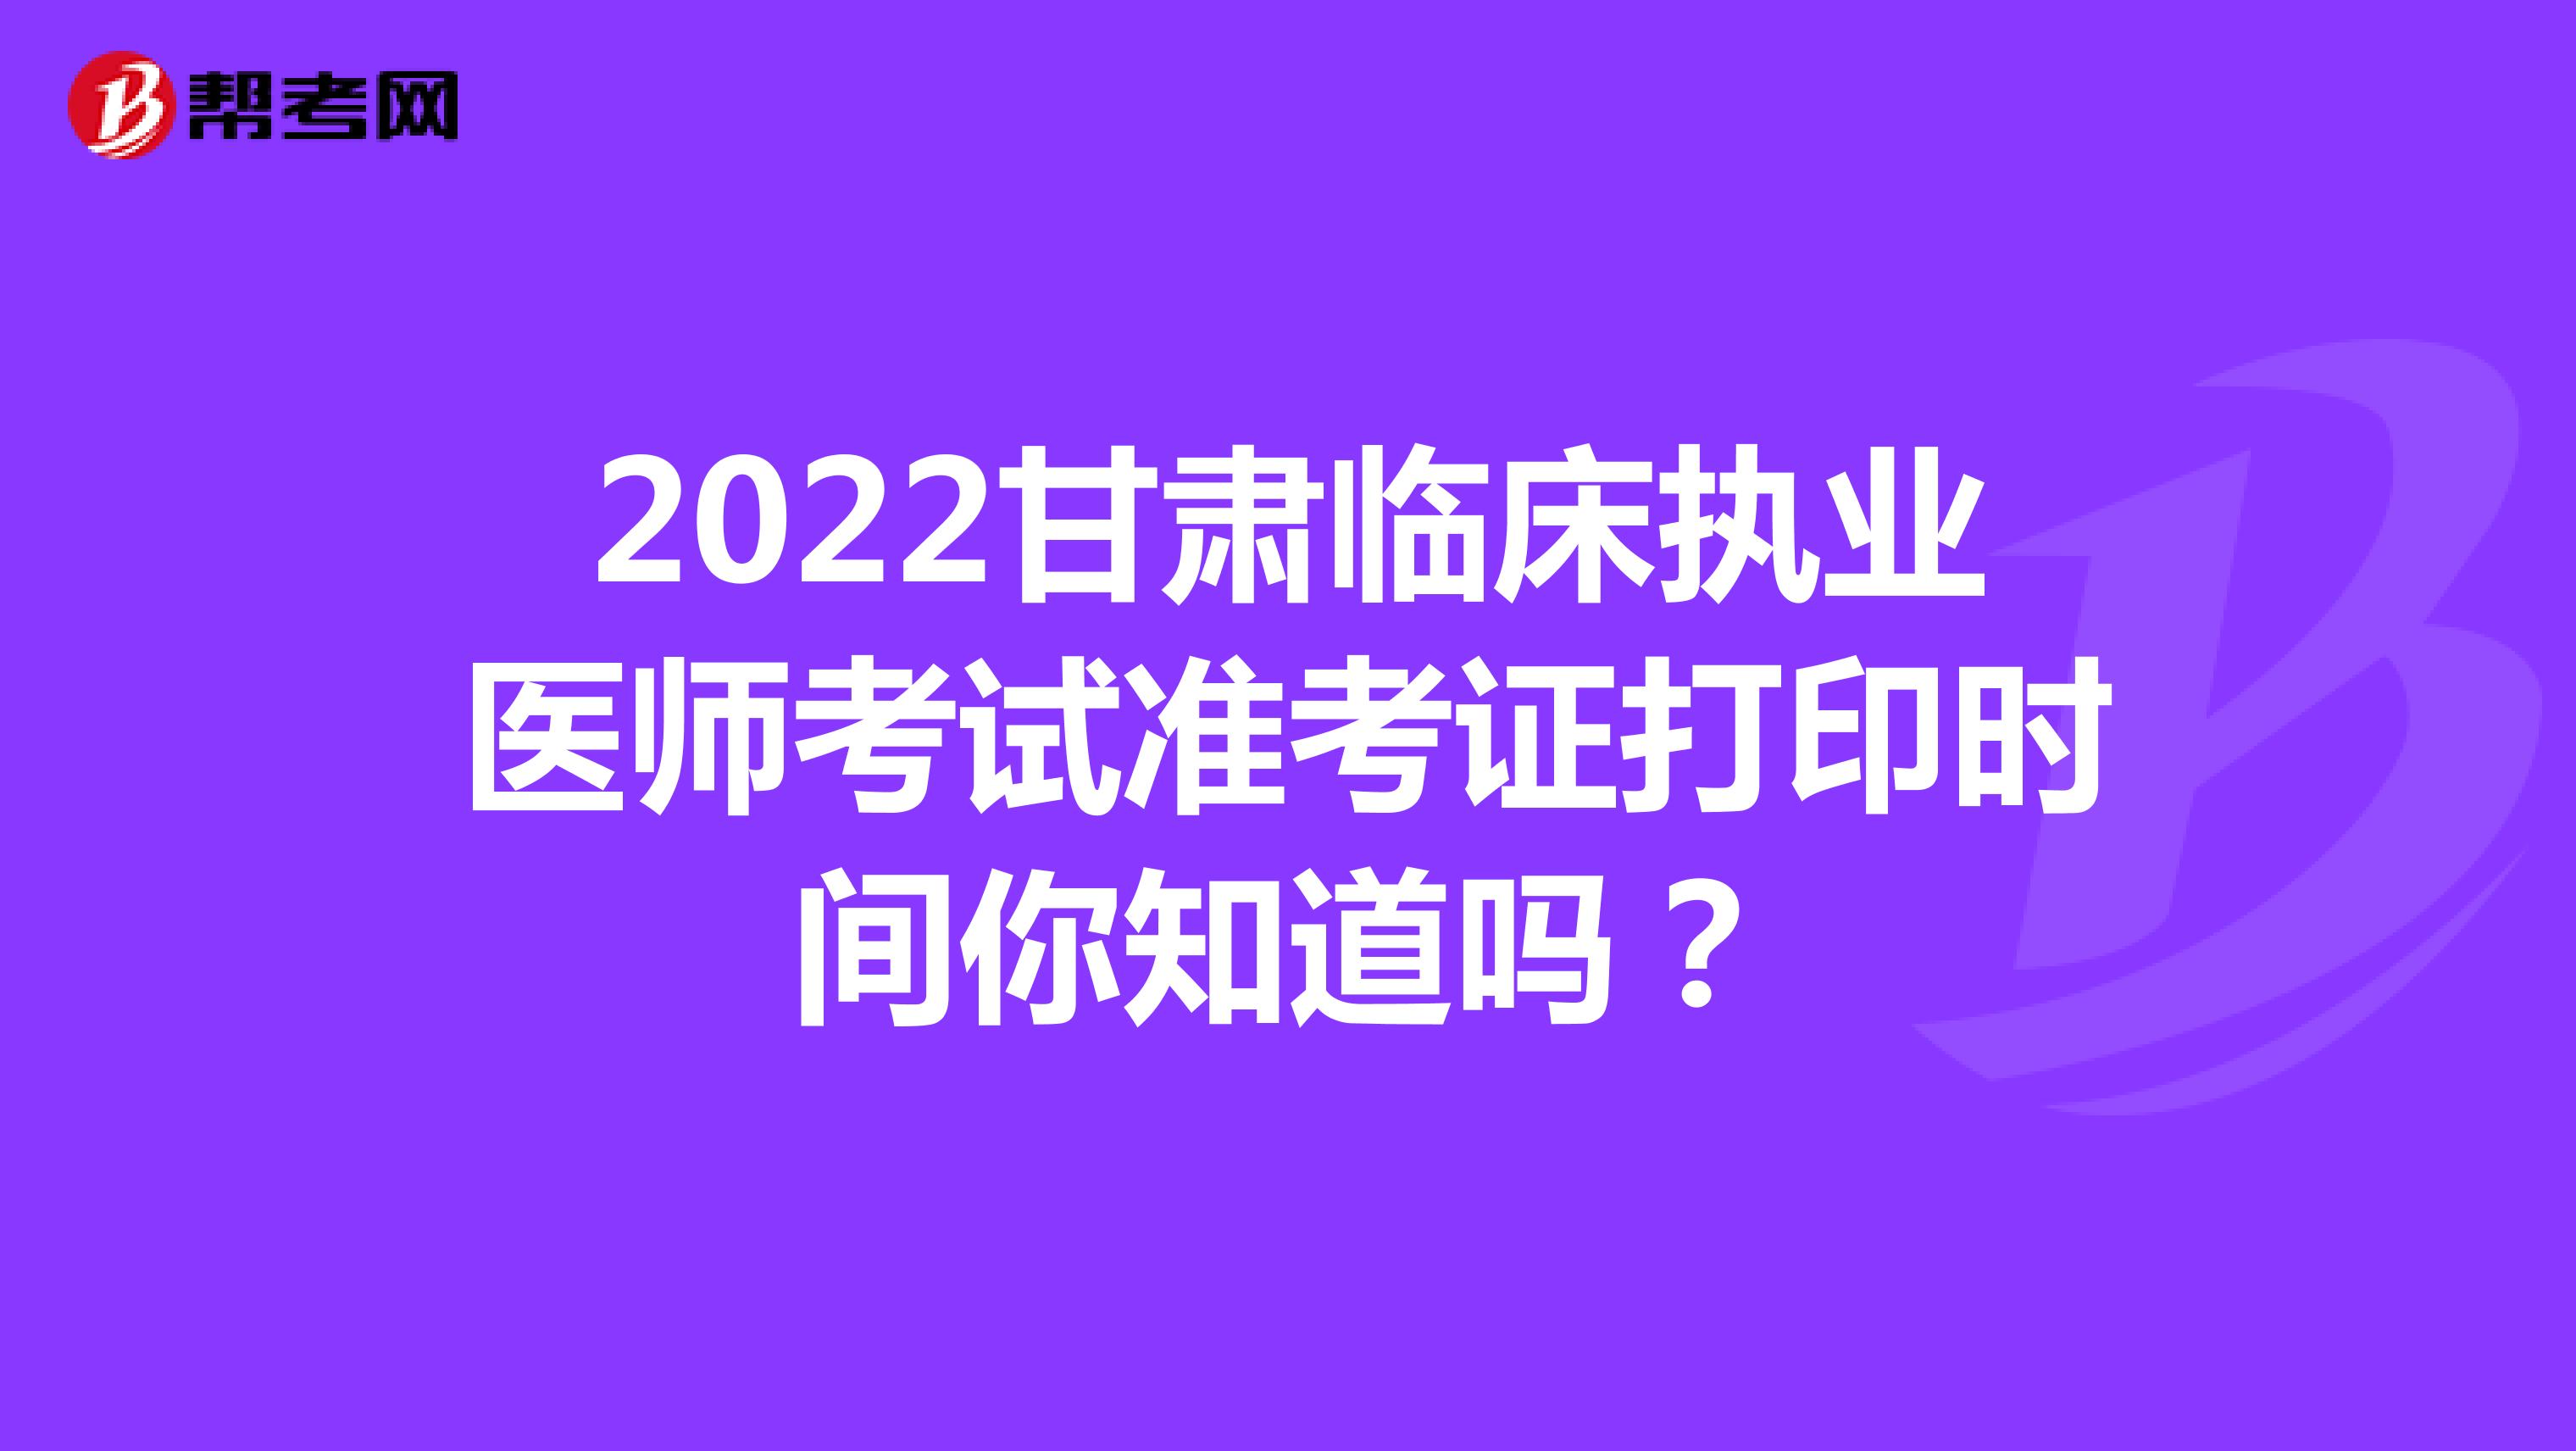 2022甘肃临床执业医师考试准考证打印时间你知道吗？